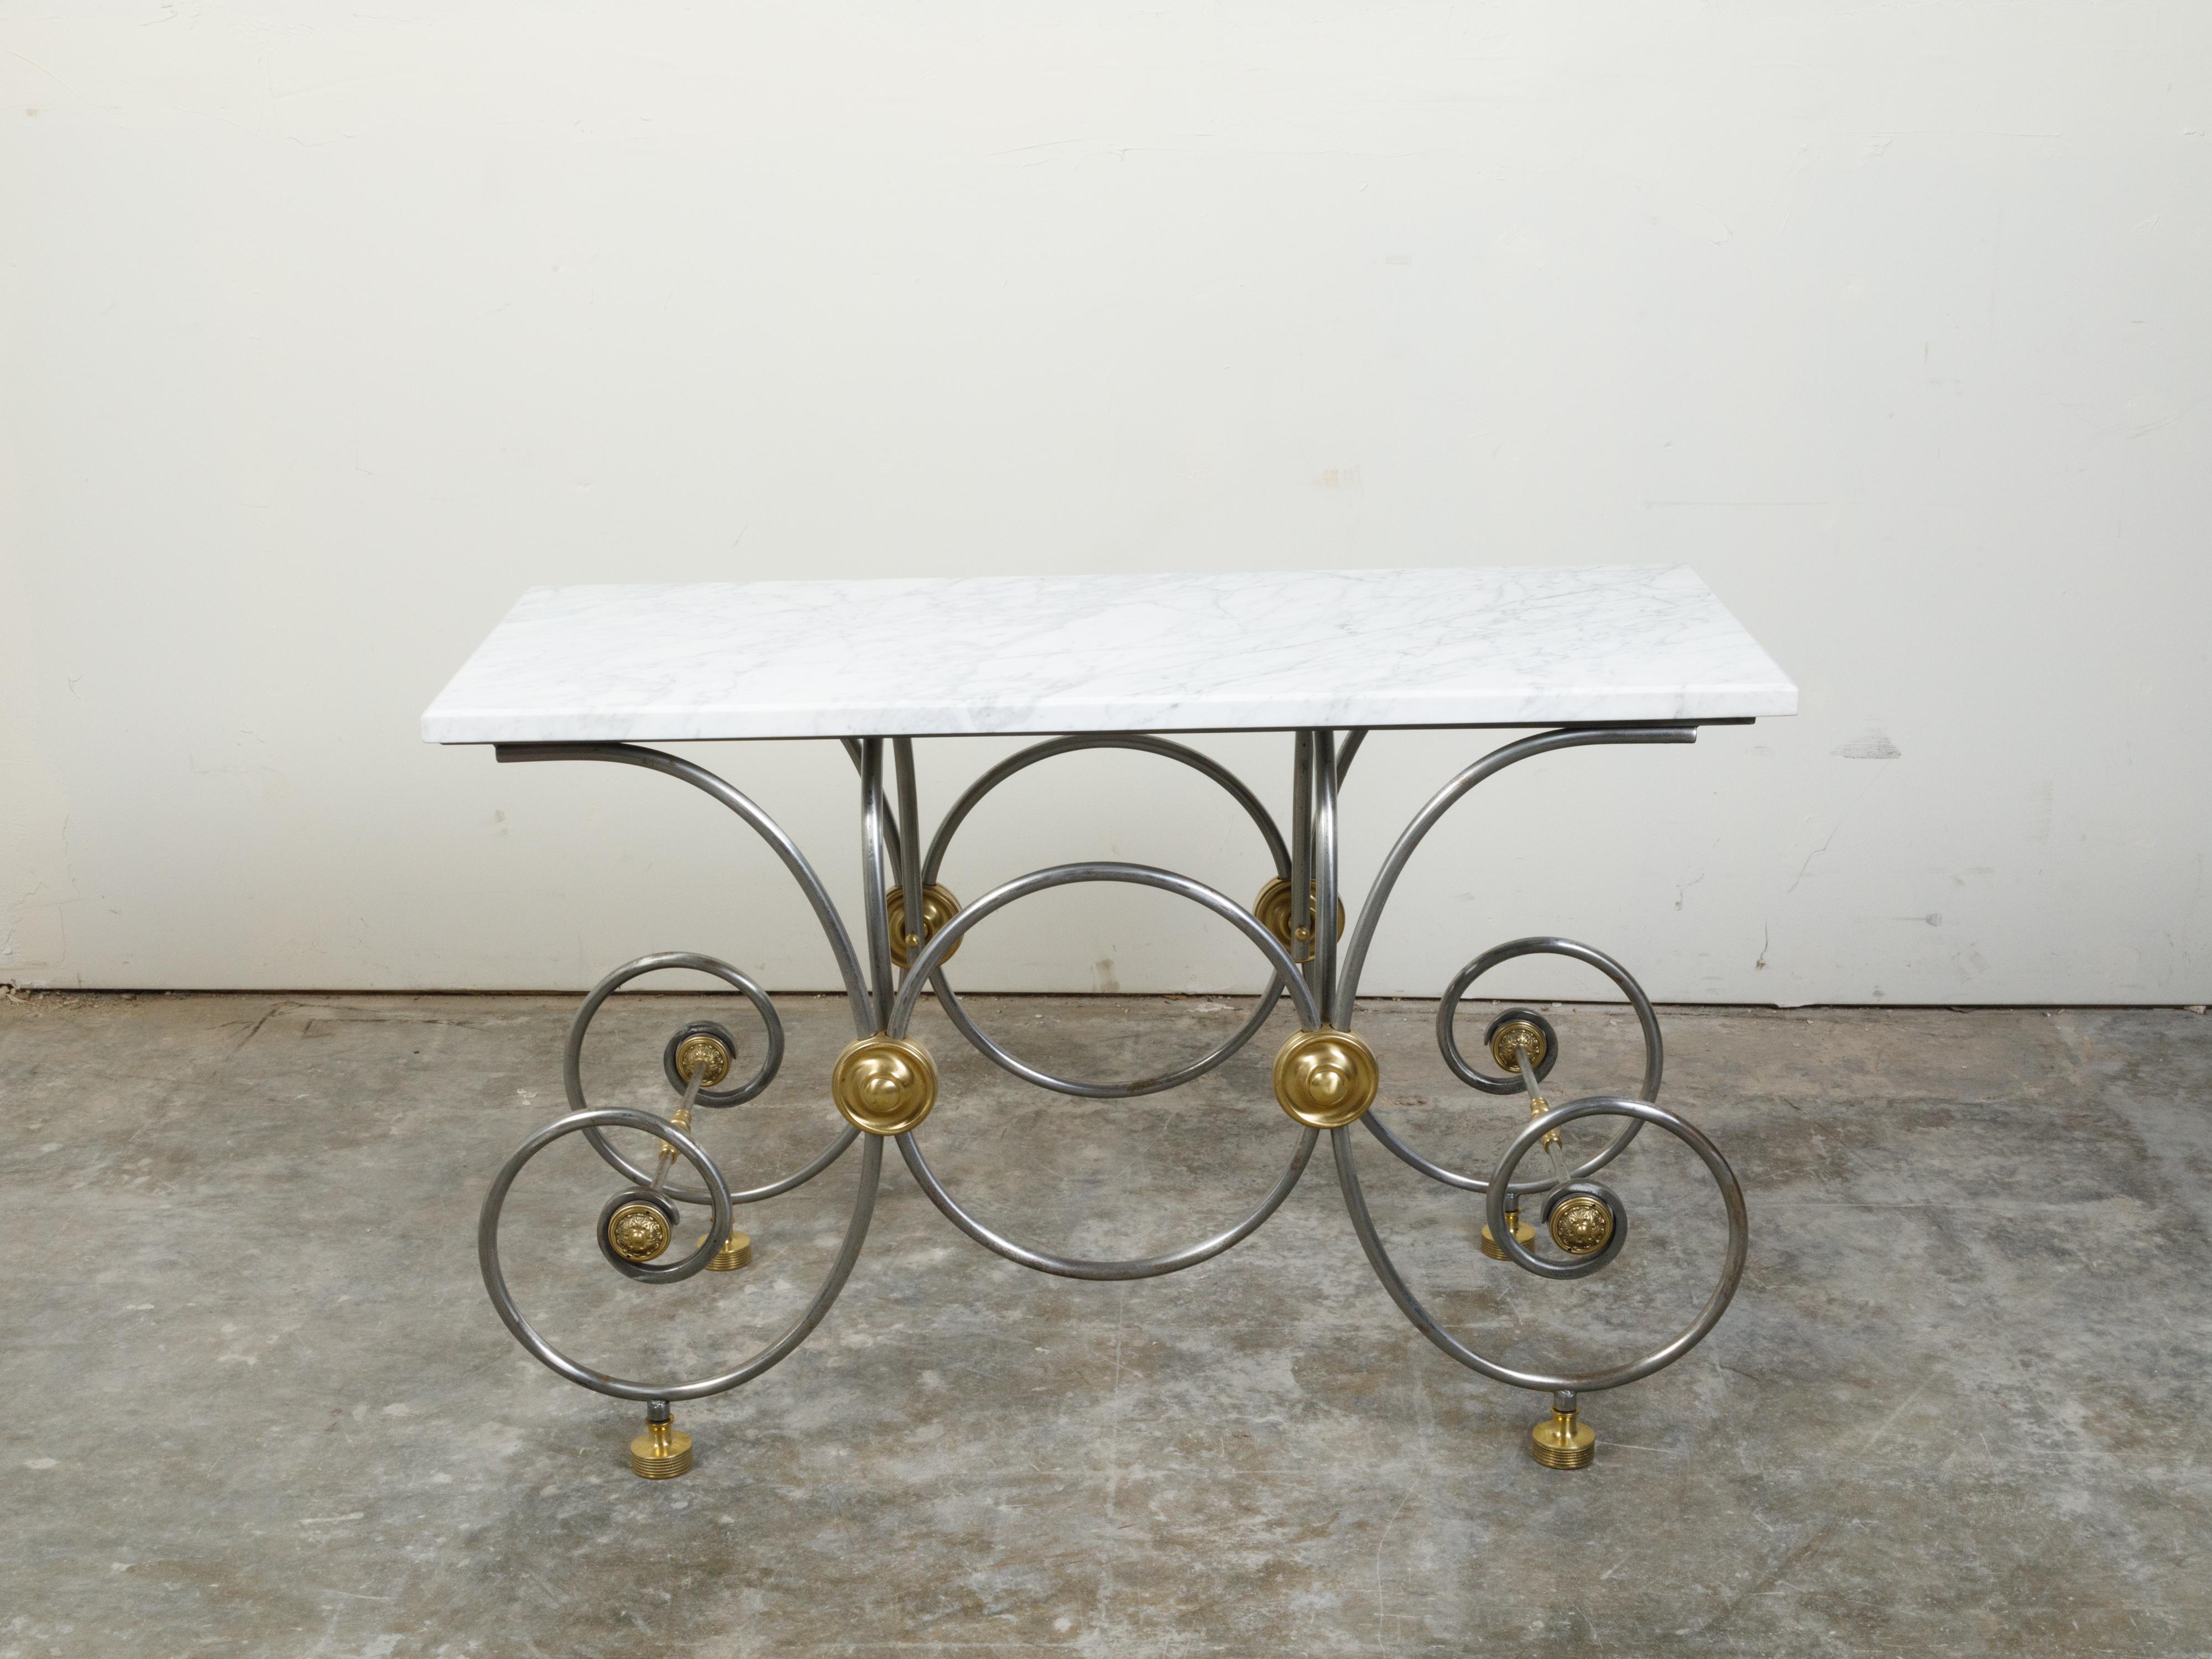 Ein französischer Bäckertisch aus Stahl und Messing aus dem späten 19. Jahrhundert mit weißer Marmorplatte und geschwungenen Beinen. Dieser Bäckertisch, der im letzten Viertel des 19. Jahrhunderts in Frankreich hergestellt wurde, hat eine